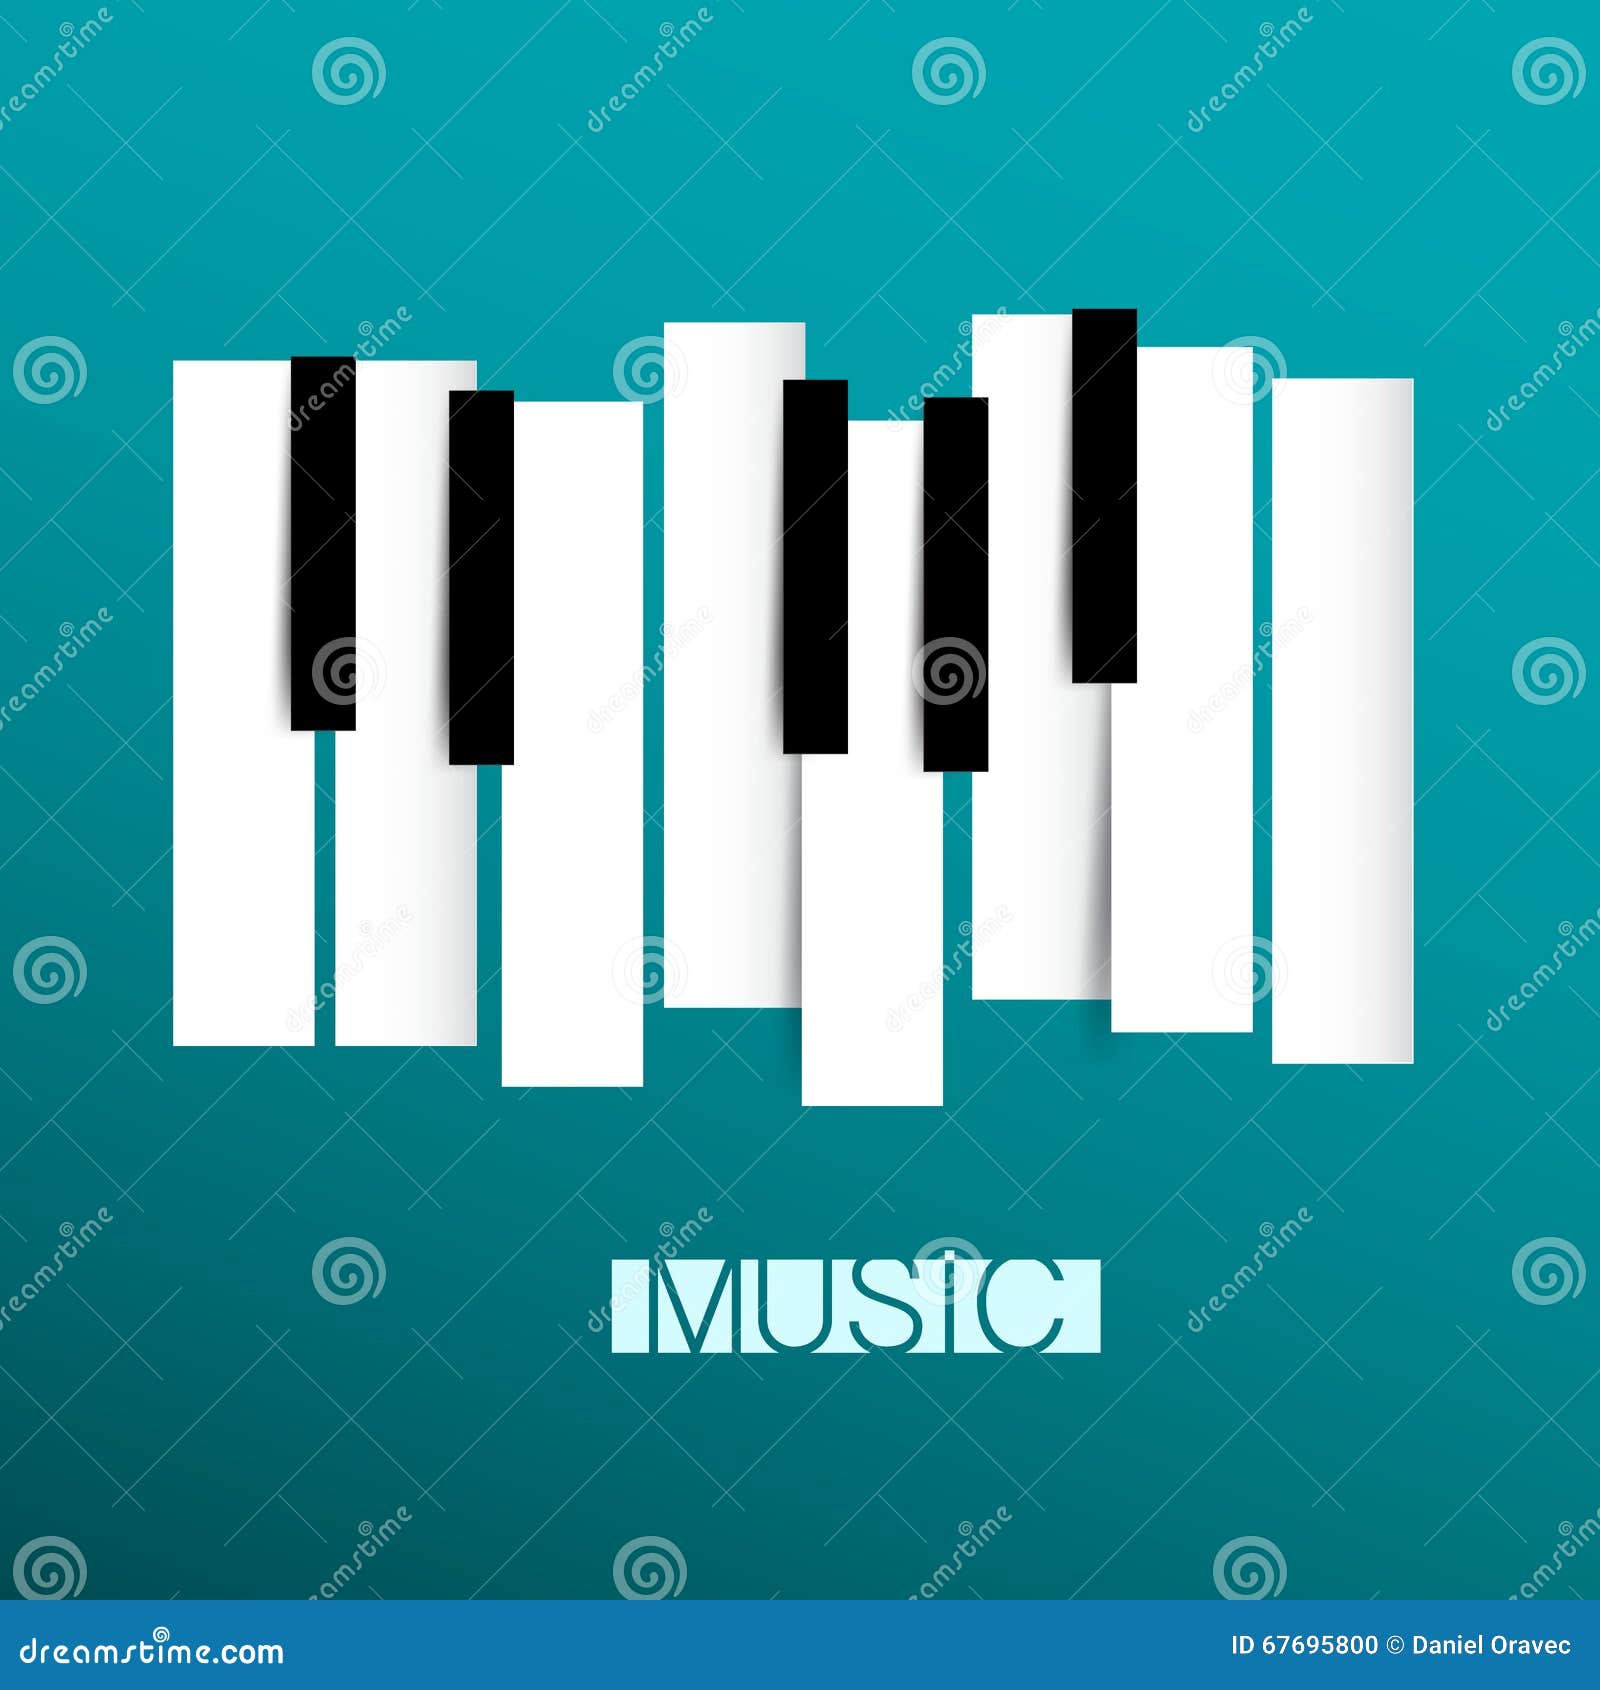 music  - piano and keybord 